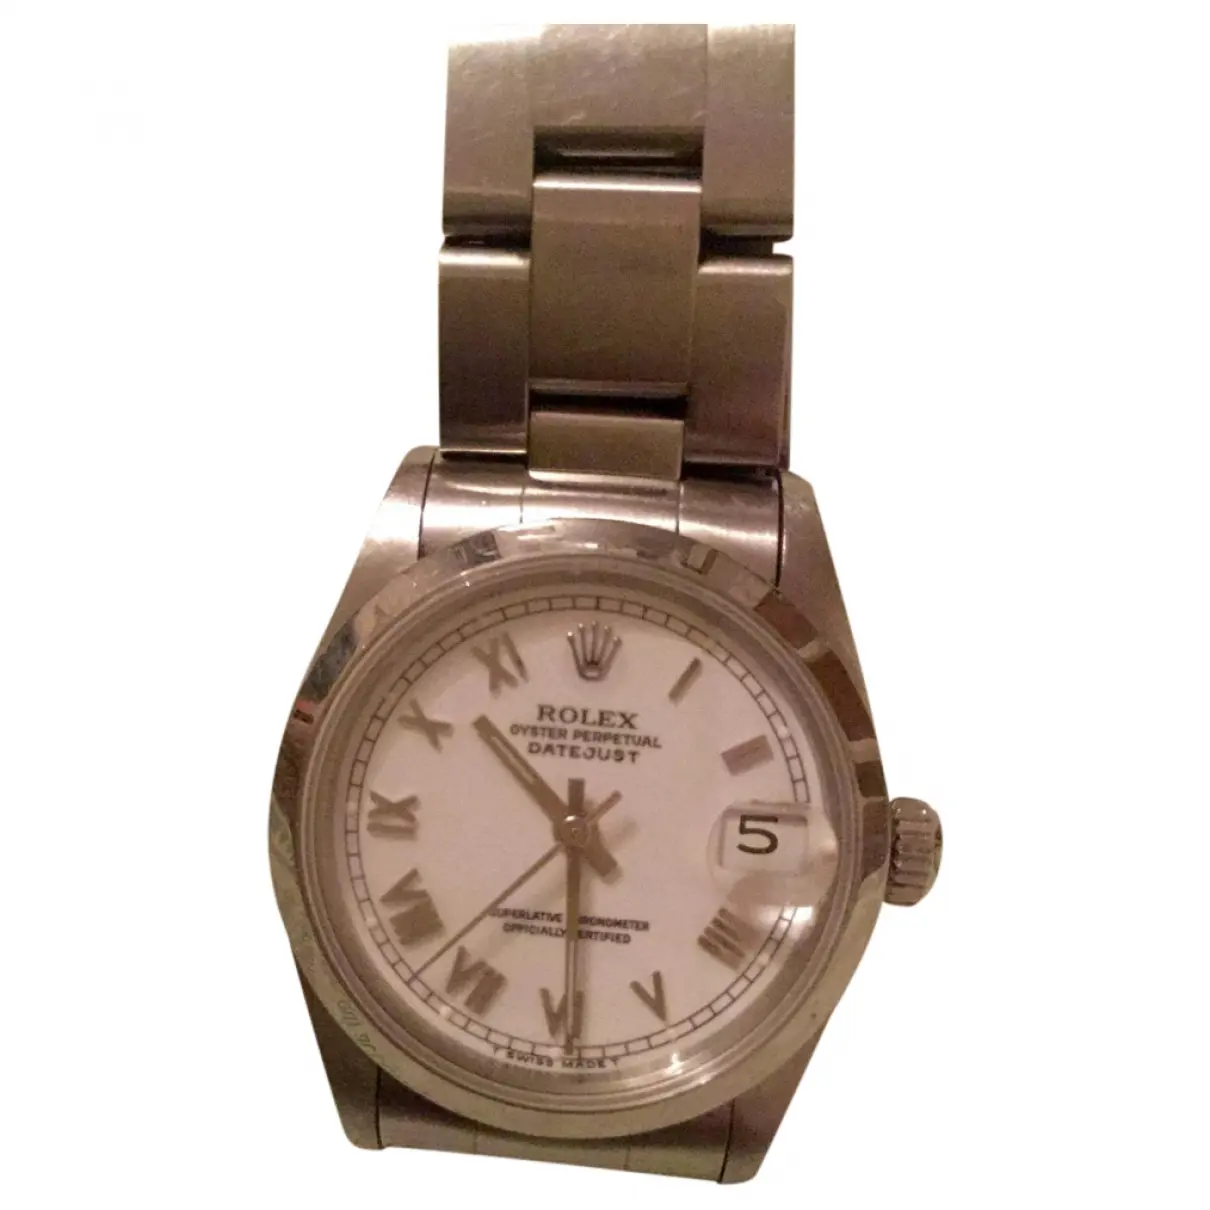 Silver Steel Watch Datejust Rolex - Vintage